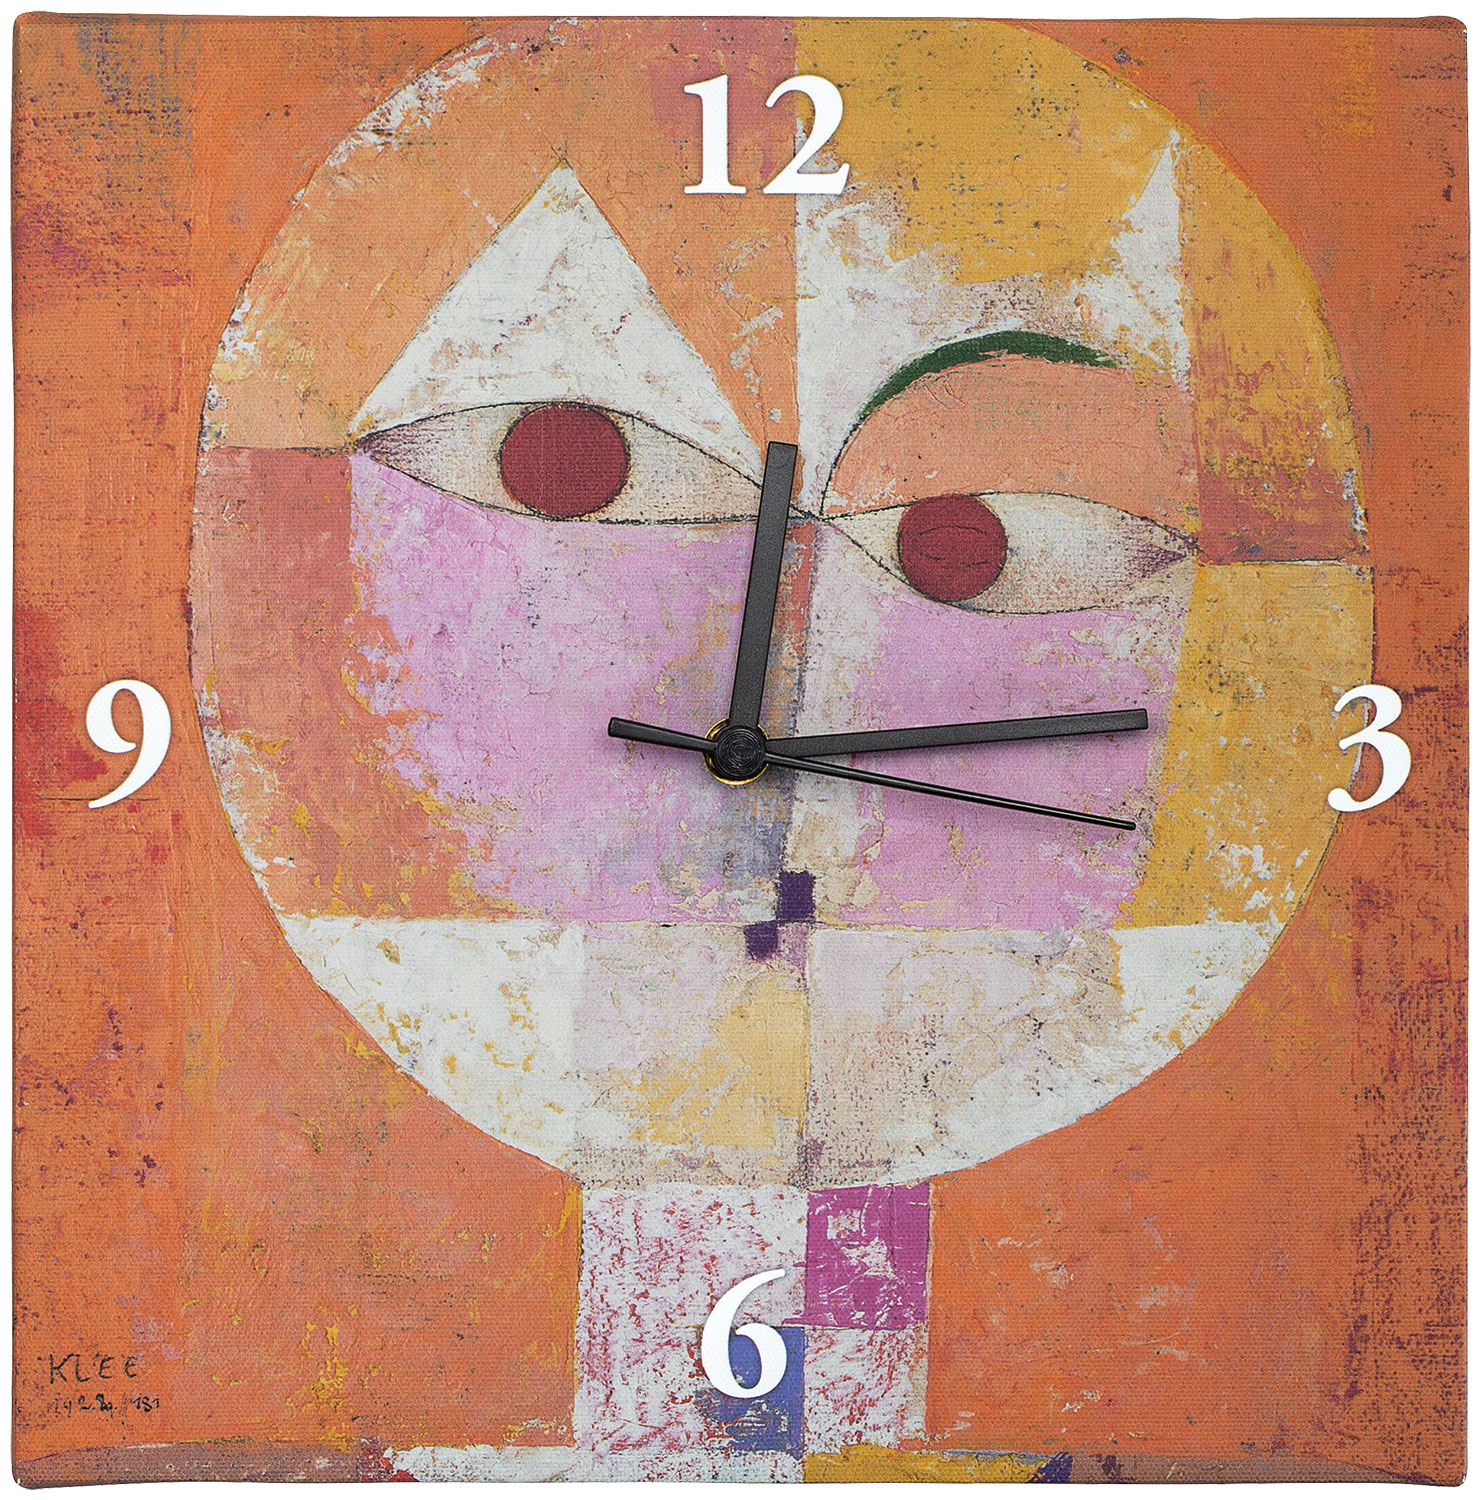 Wall clock "Senecio" by Paul Klee